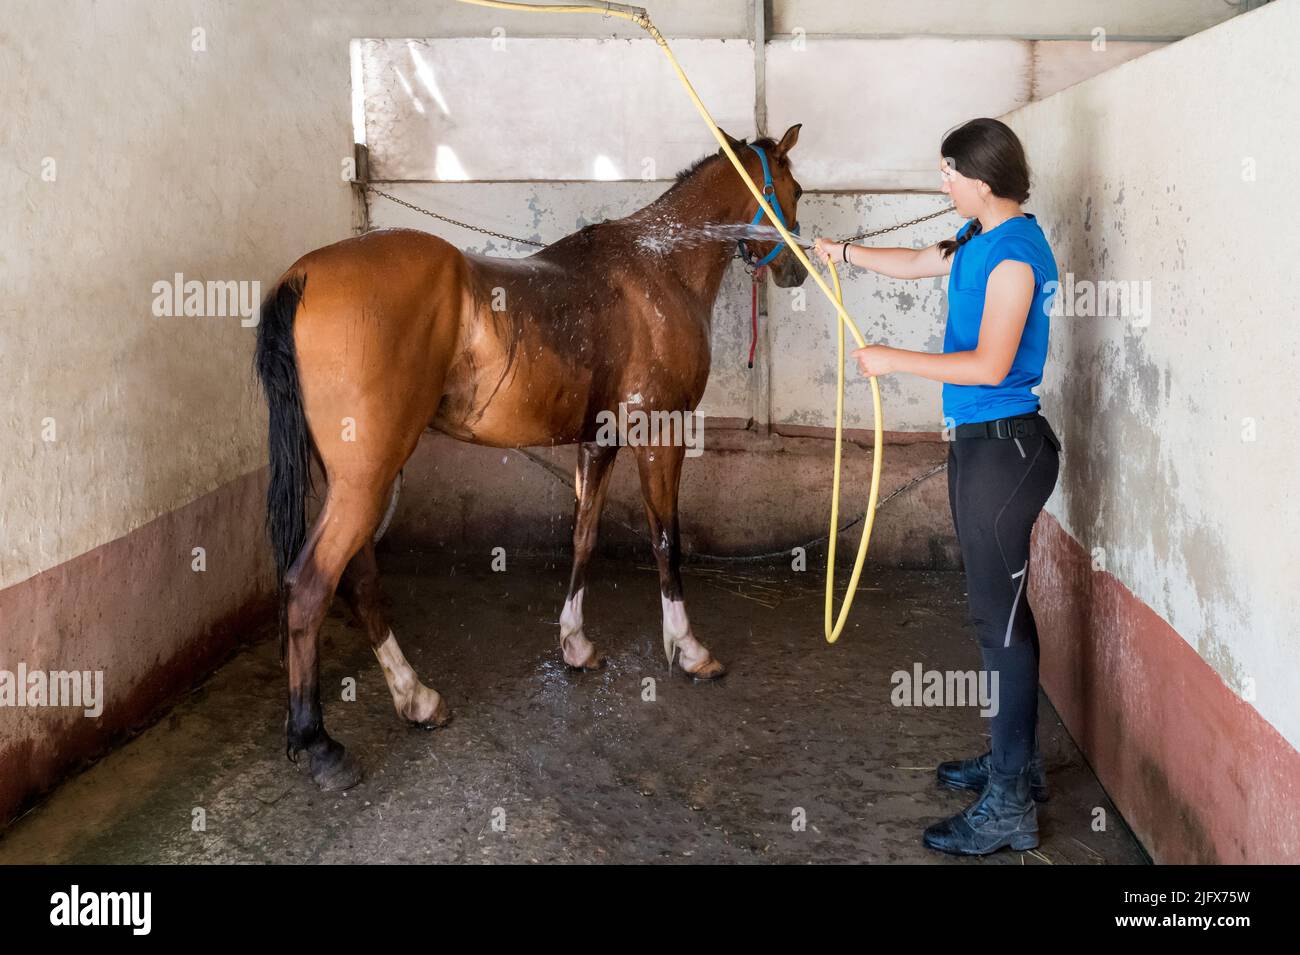 Mujer joven de cuerpo entero con pelo oscuro usando la manguera para verter agua limpia en el caballo de laurel dentro de la caja con paredes de hormigón Foto de stock